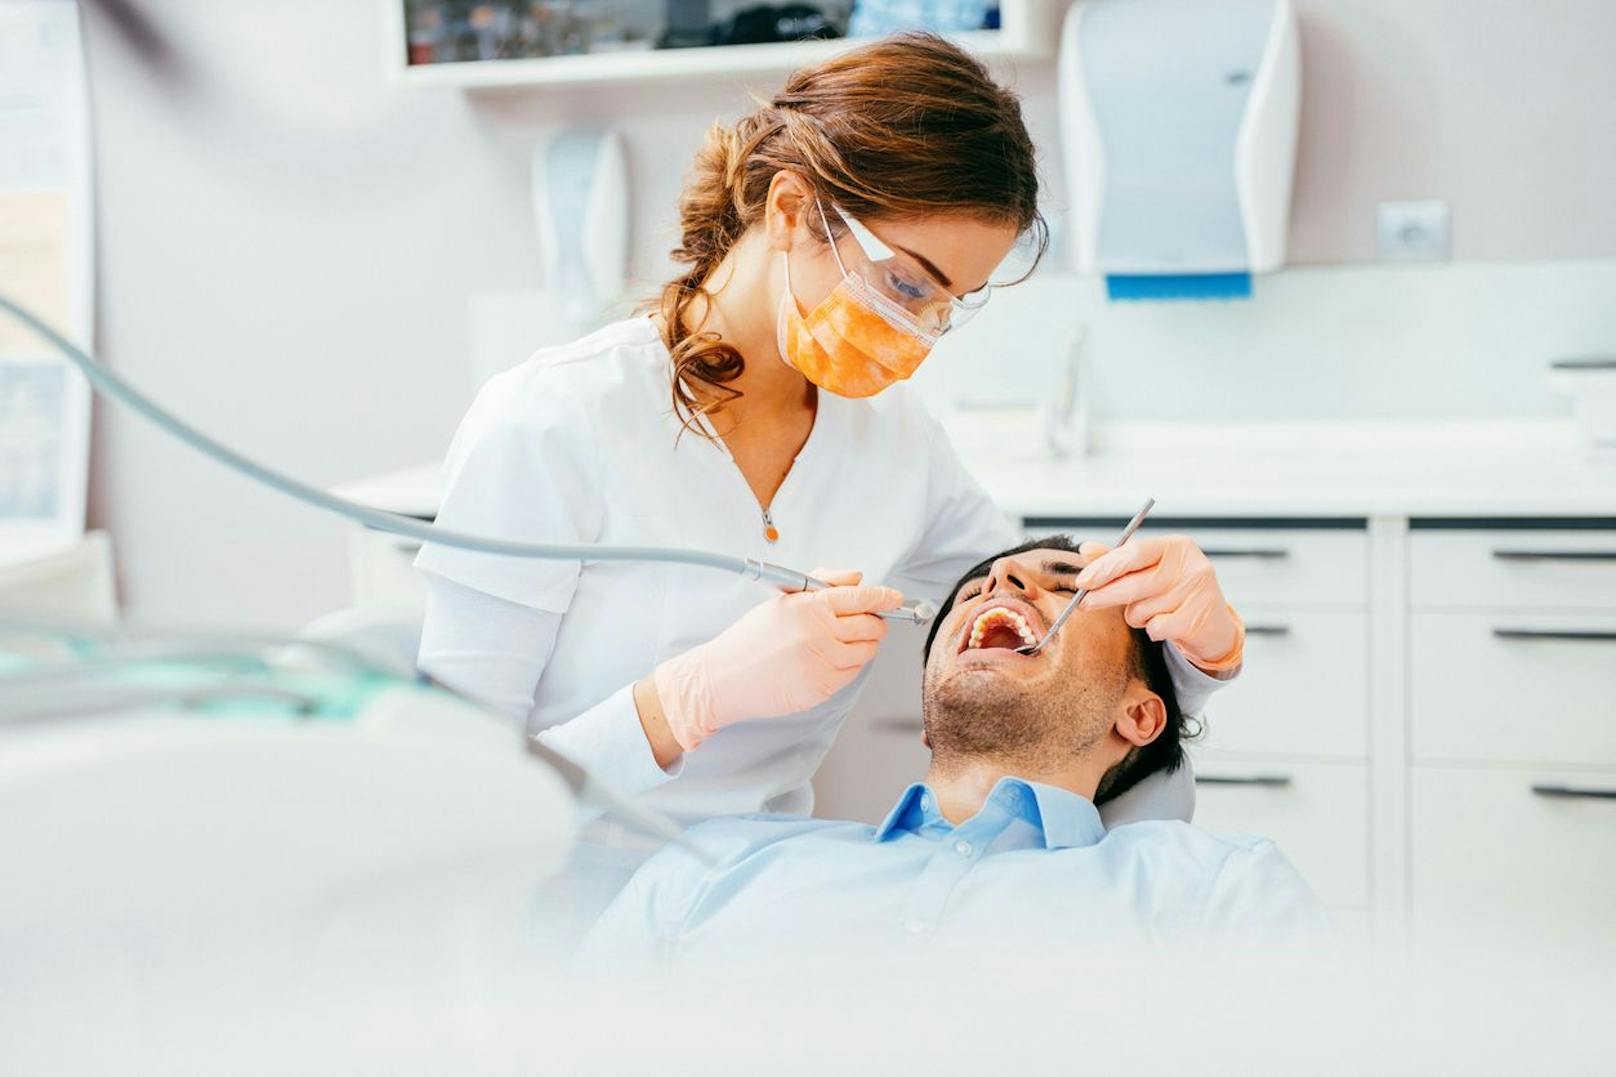 Dein Zahnarzt kann den Zustand deiner Zähne erkennen und zukünftige Schäden verhindern.